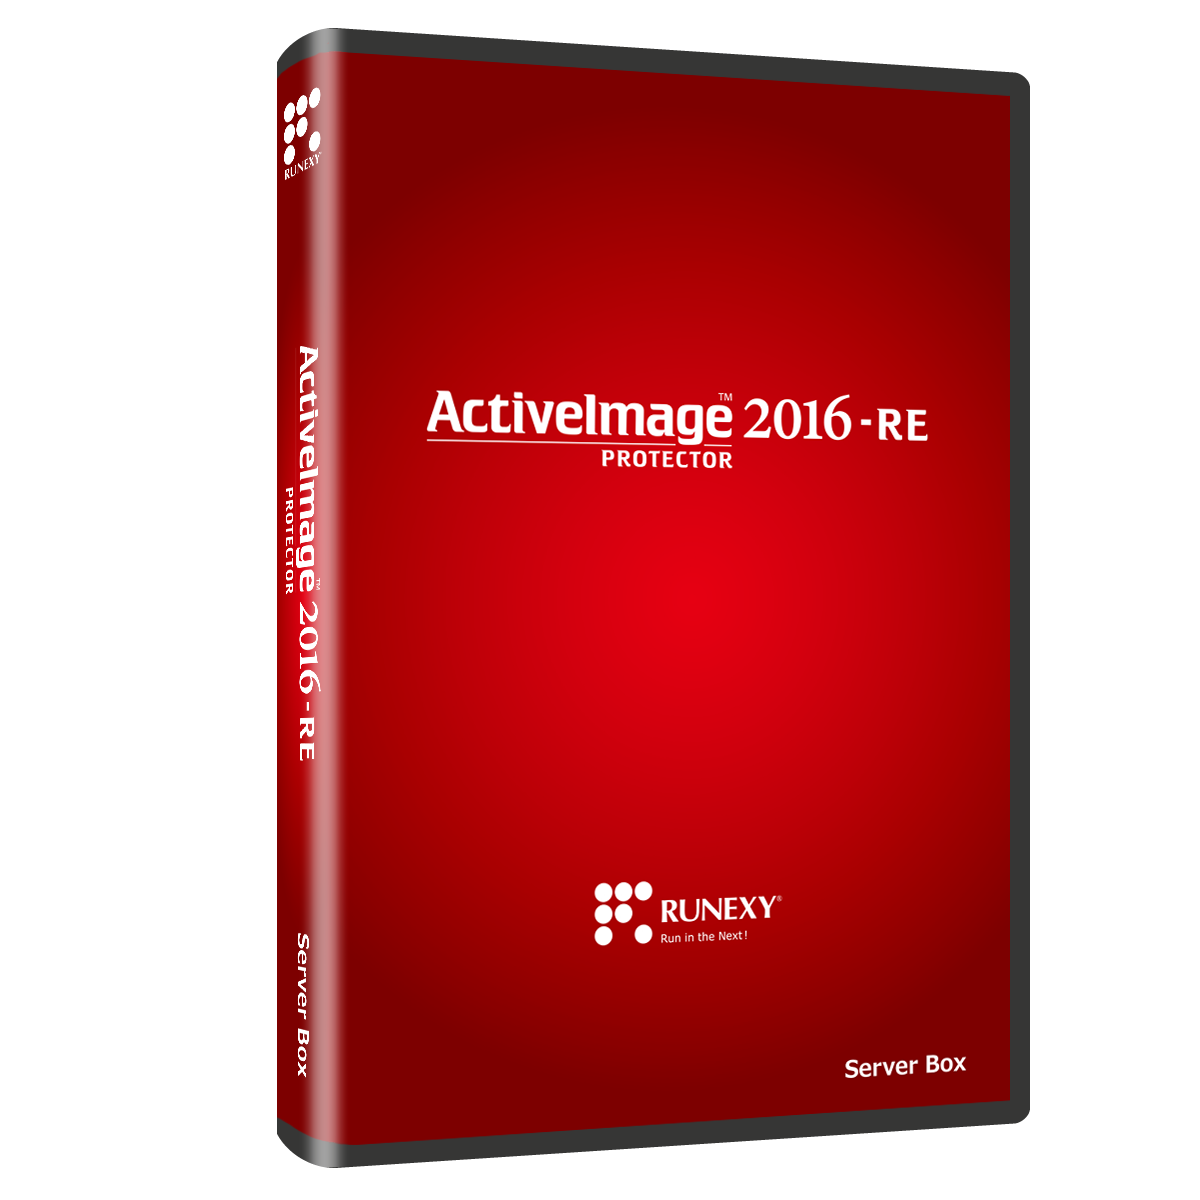 ActiveImage Protector 2016-RE パッケージ画像